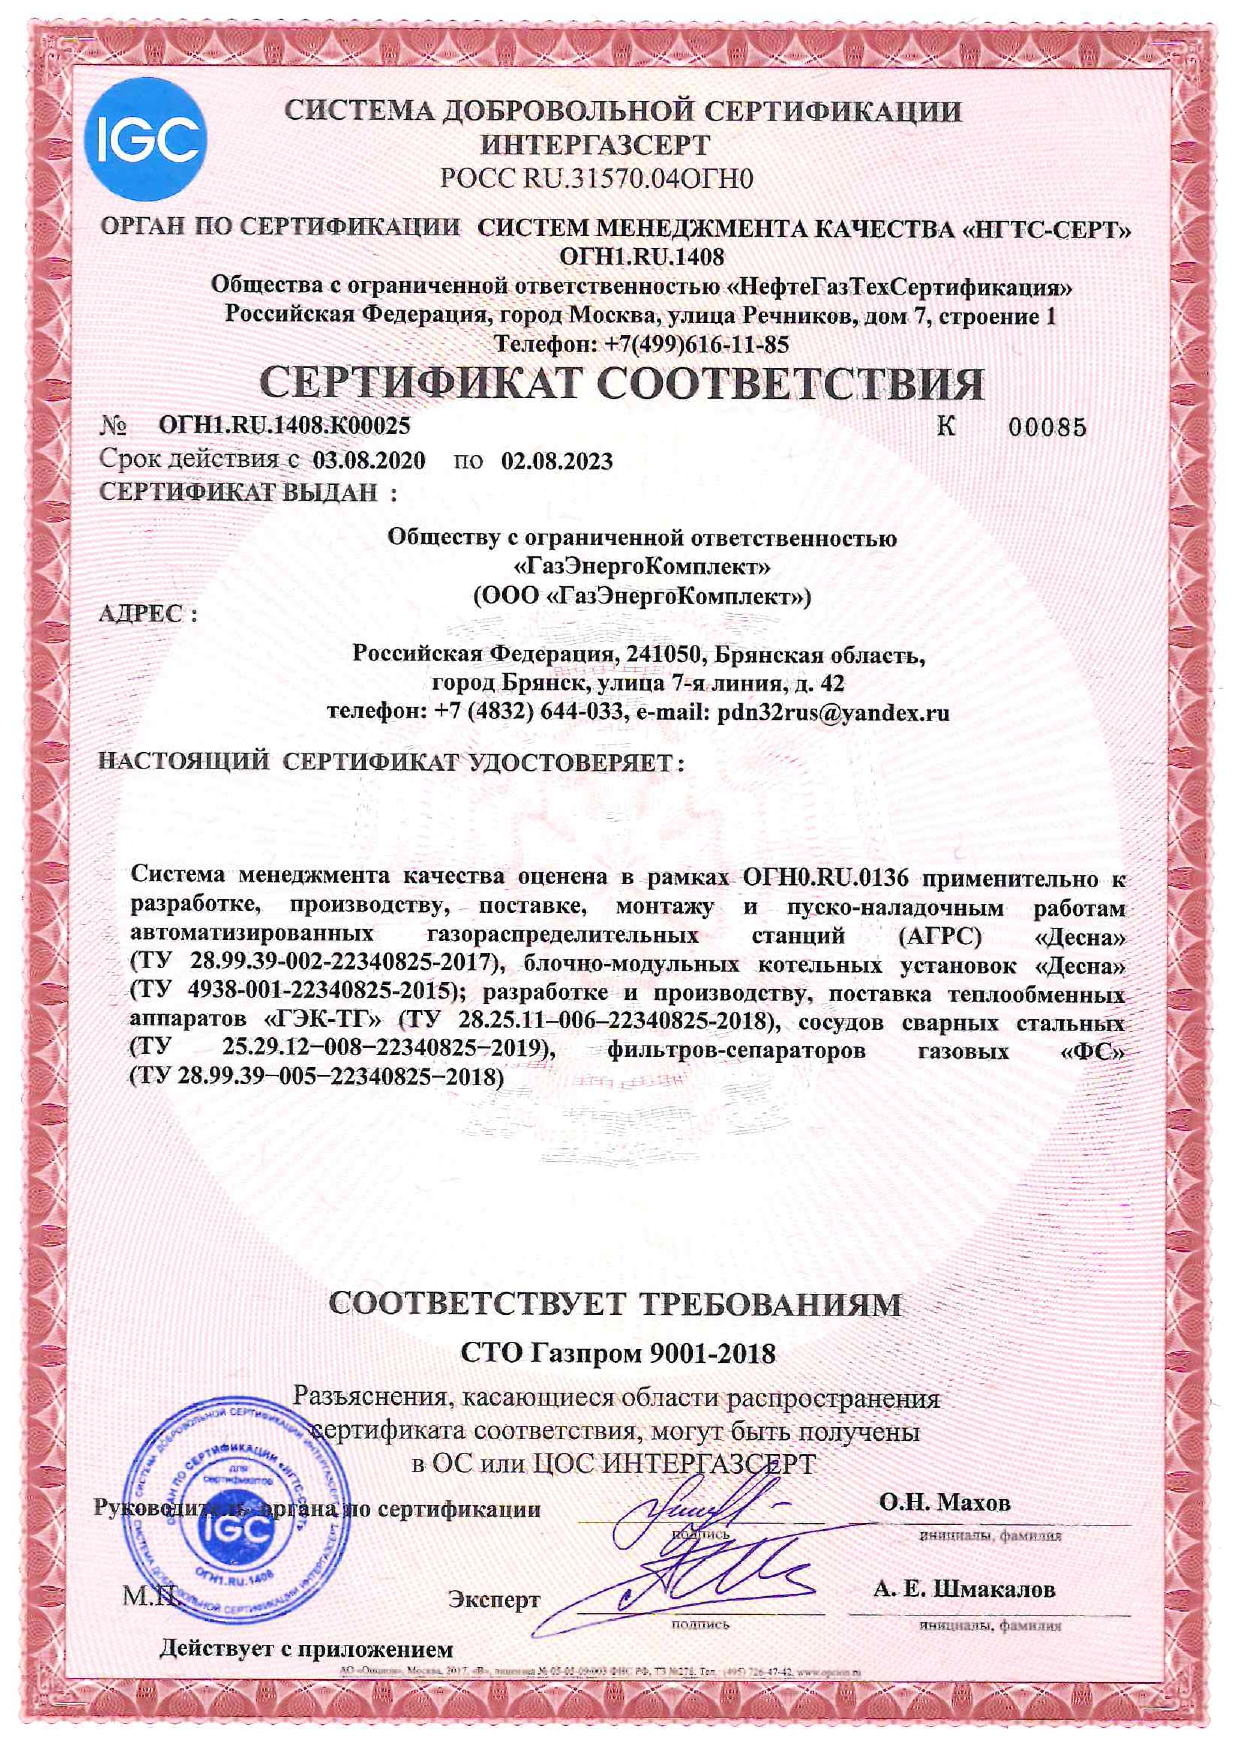 Сертификат Система менеджмента качества оценена в рамках ОГНО.RU.0136